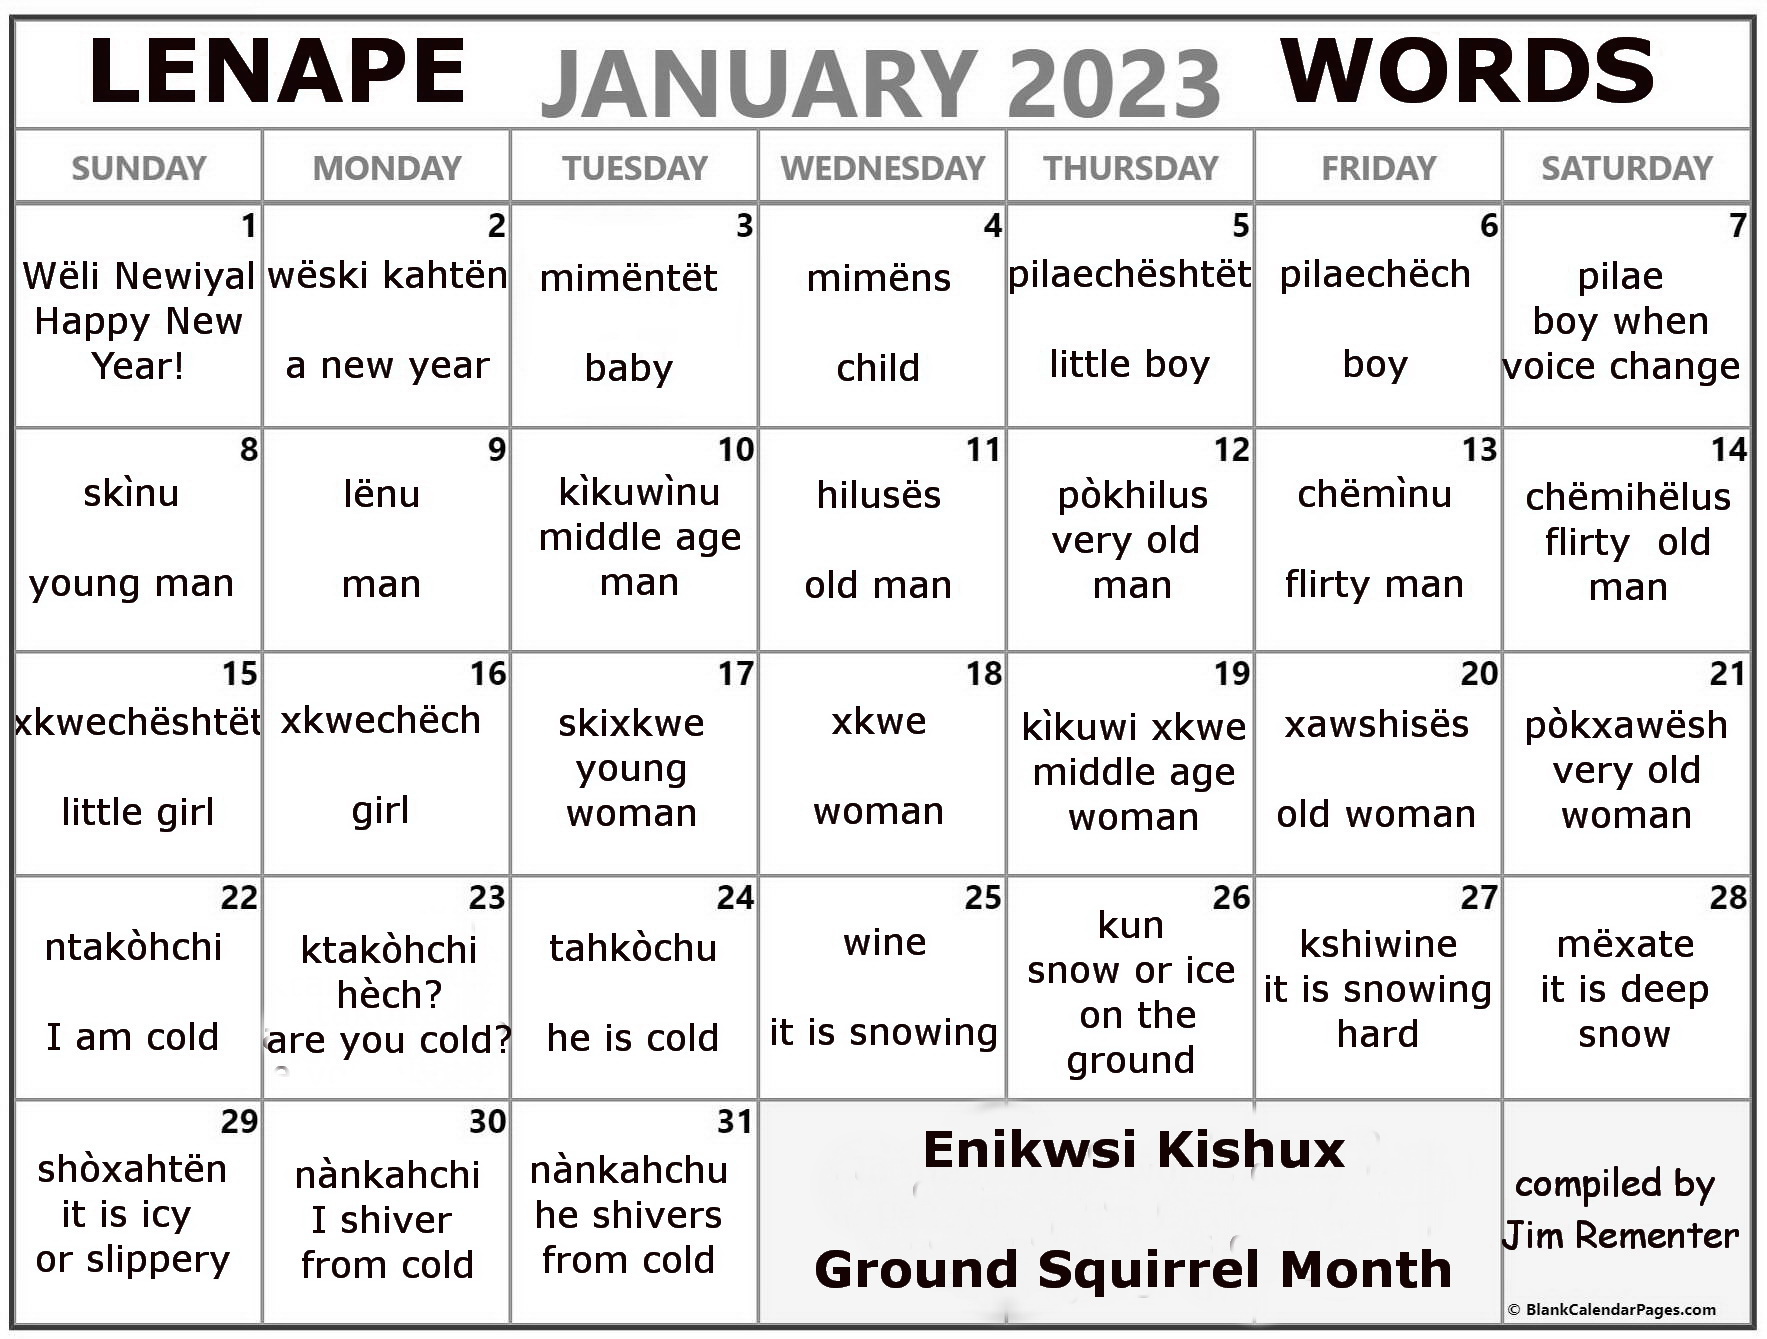 January 2023 Lenape Word-a-Day Calendar